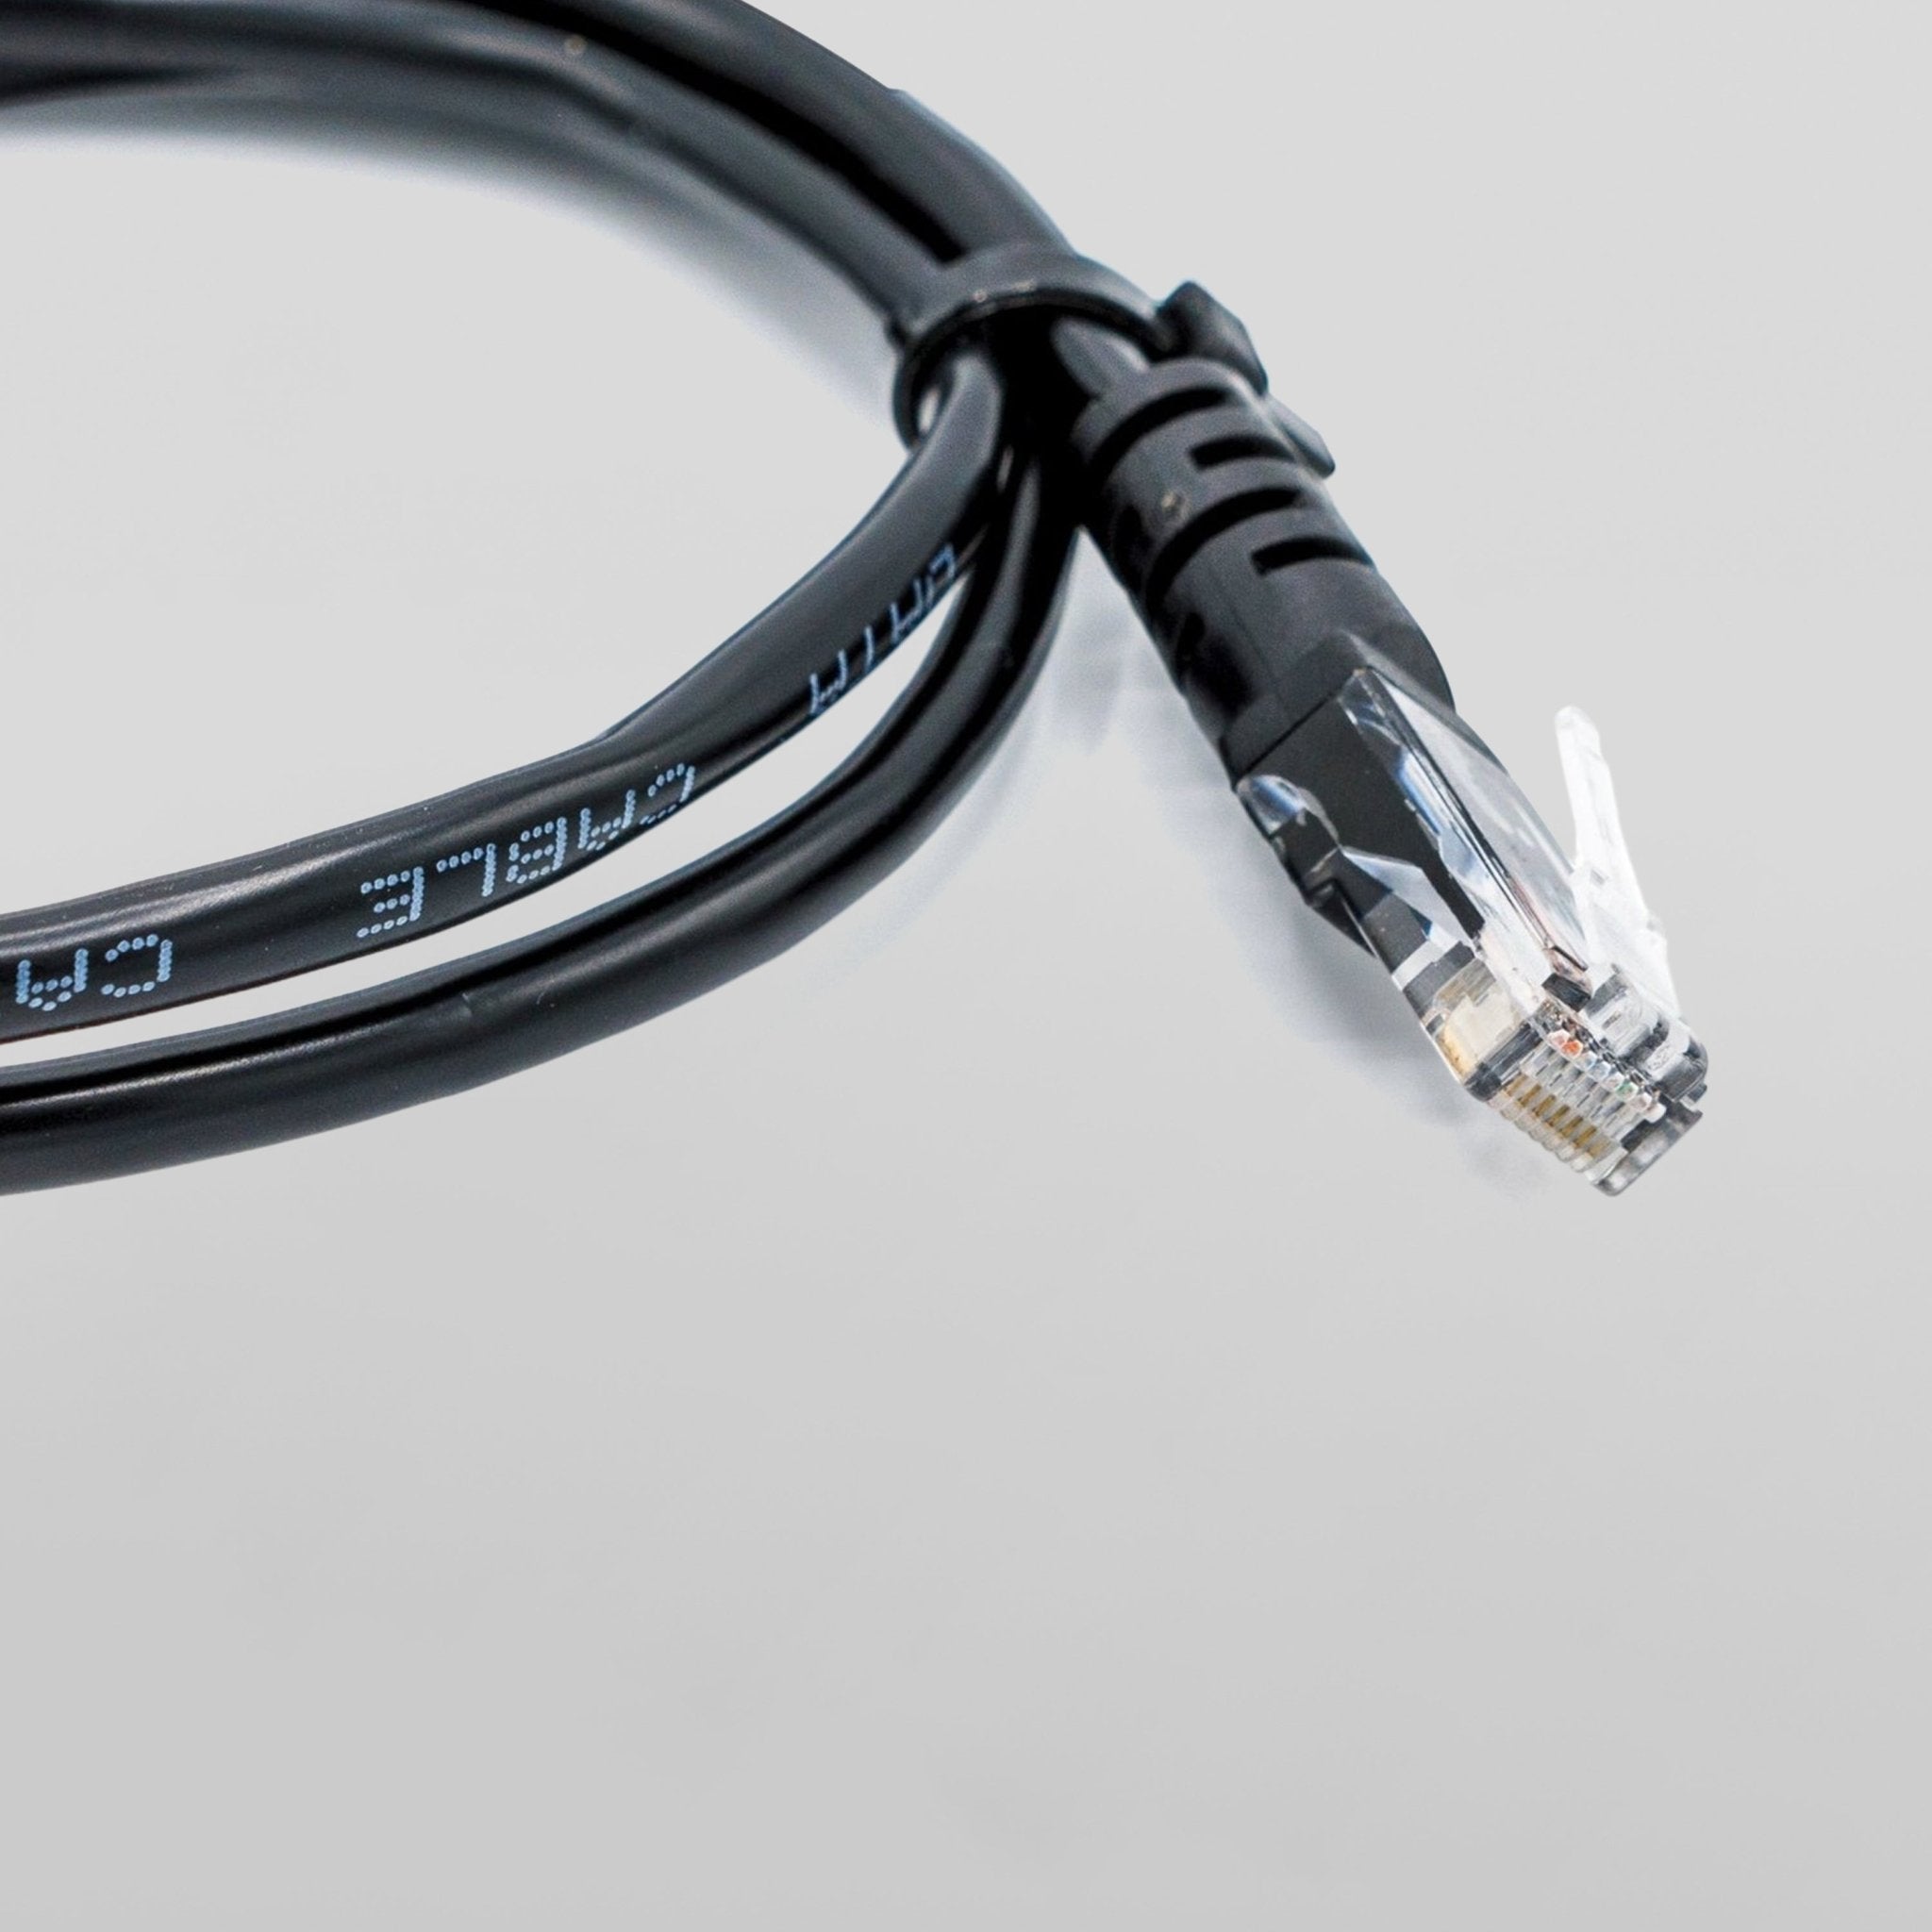 Cat6/Cat5e Ethernet Cable (2m/ 6.5ft, Black) - Zima Store Online